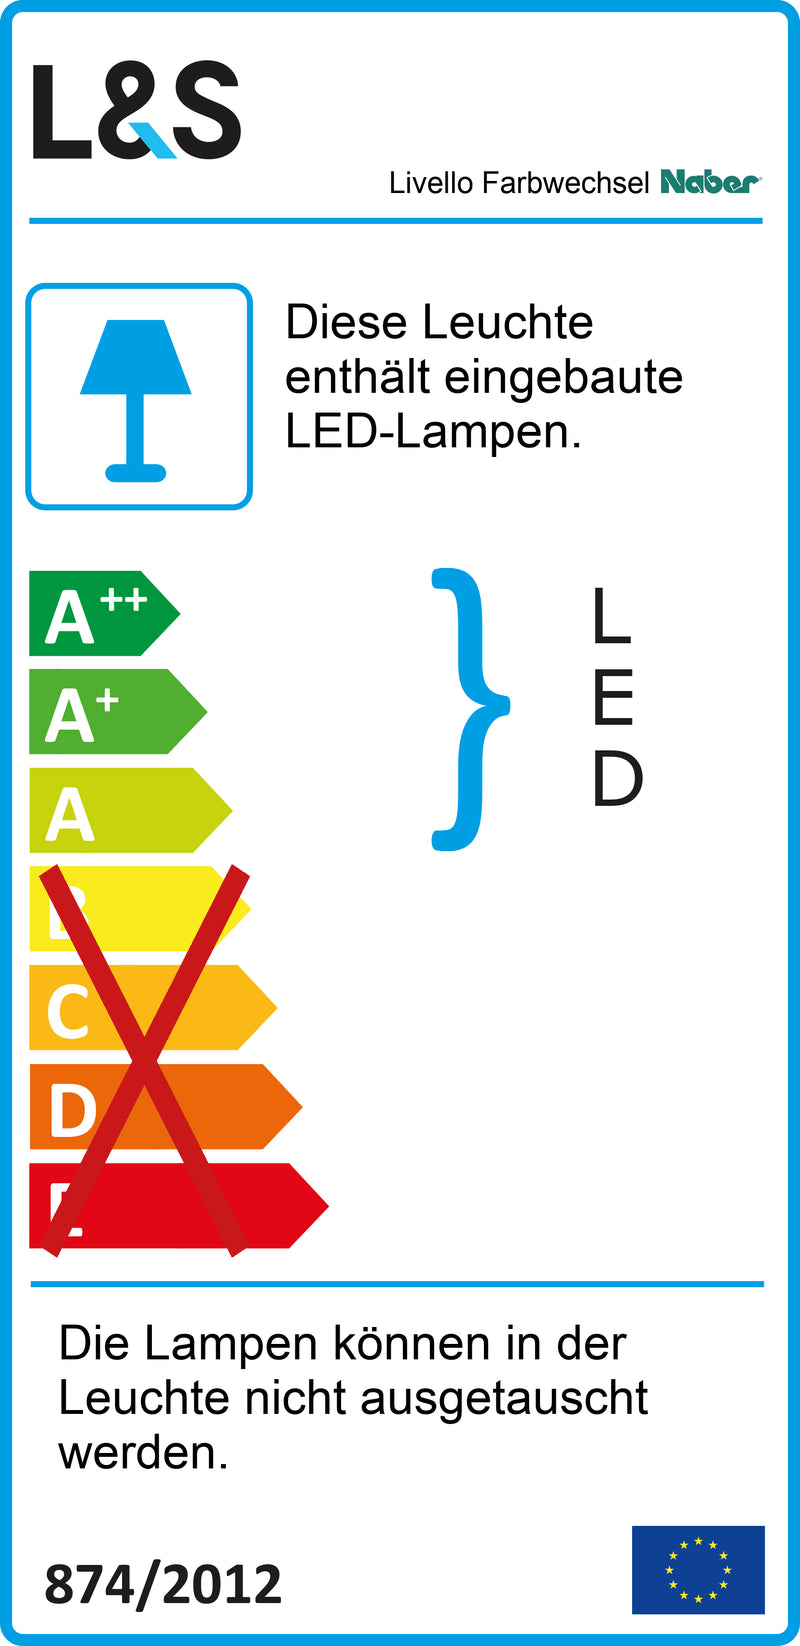 E-Label zu Zeichnung zu Livello Farbwechsel LED als Variante Set-5, schwarz von Naber GmbH in der Kategorie Lichttechnik in Österreich auf conceptshop.at